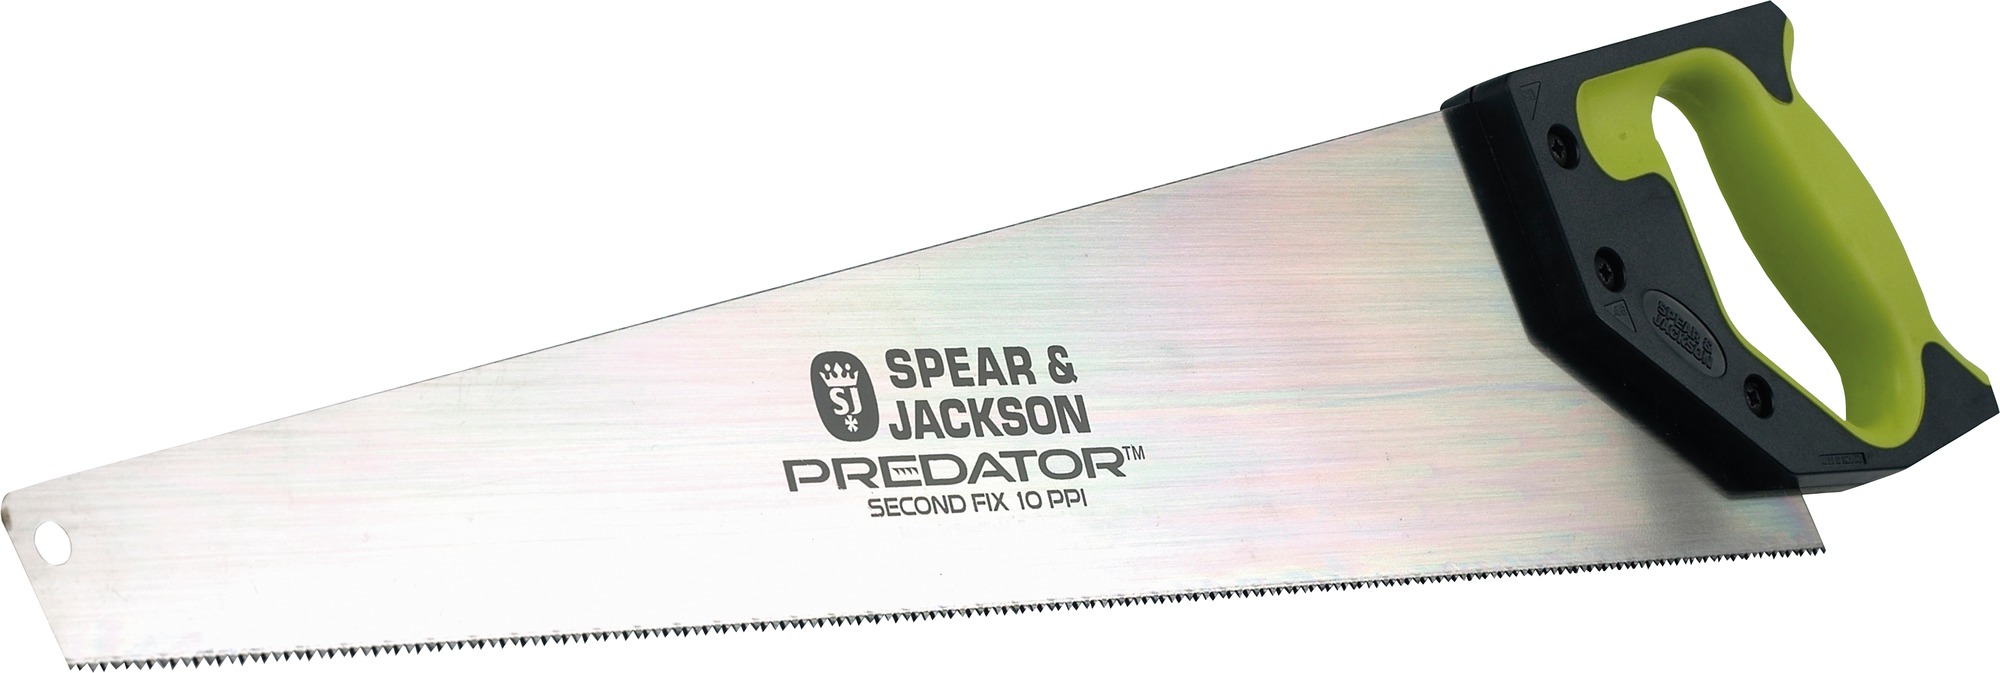 Scie egoïne coupe de finition Spear & Jackson - 550 mm